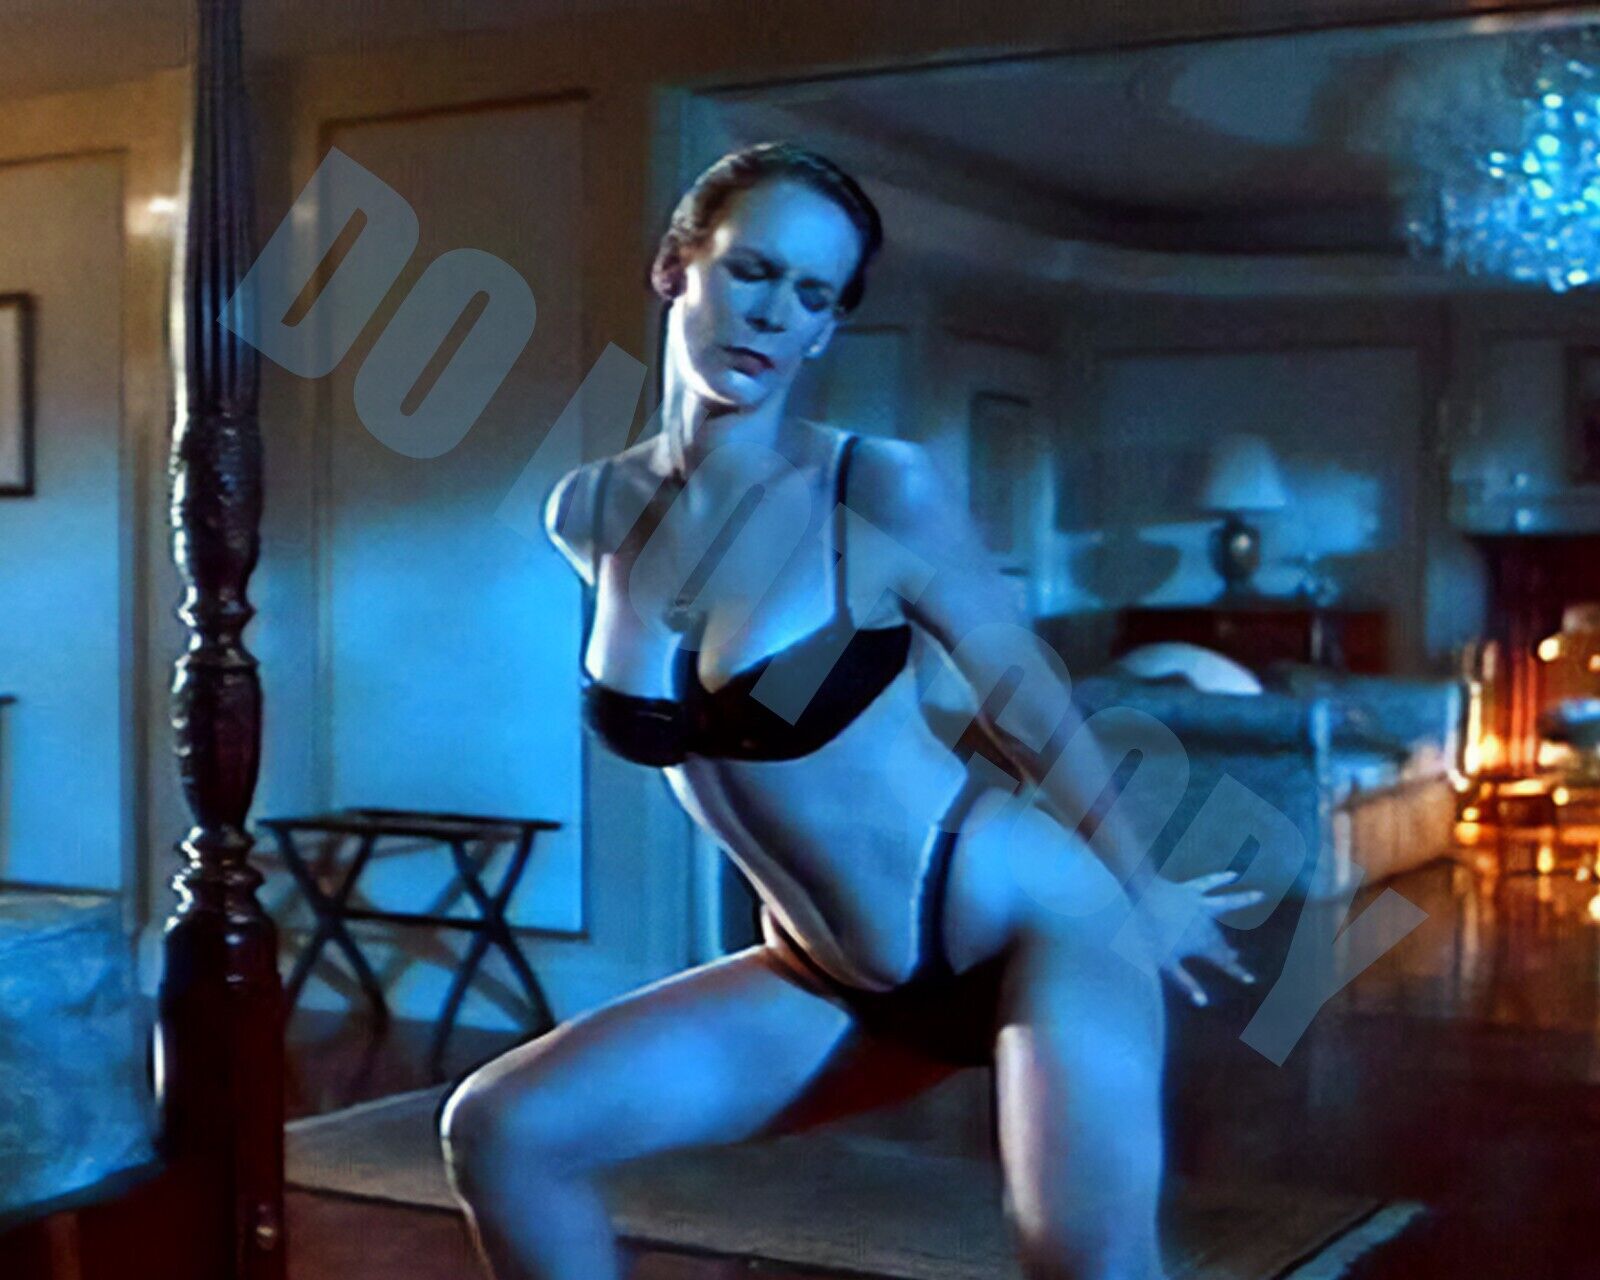 Jamie Lee Curtis True Lies Bra Panty Hotel Bedroom Stripper Scene -B- 8x10 Photo